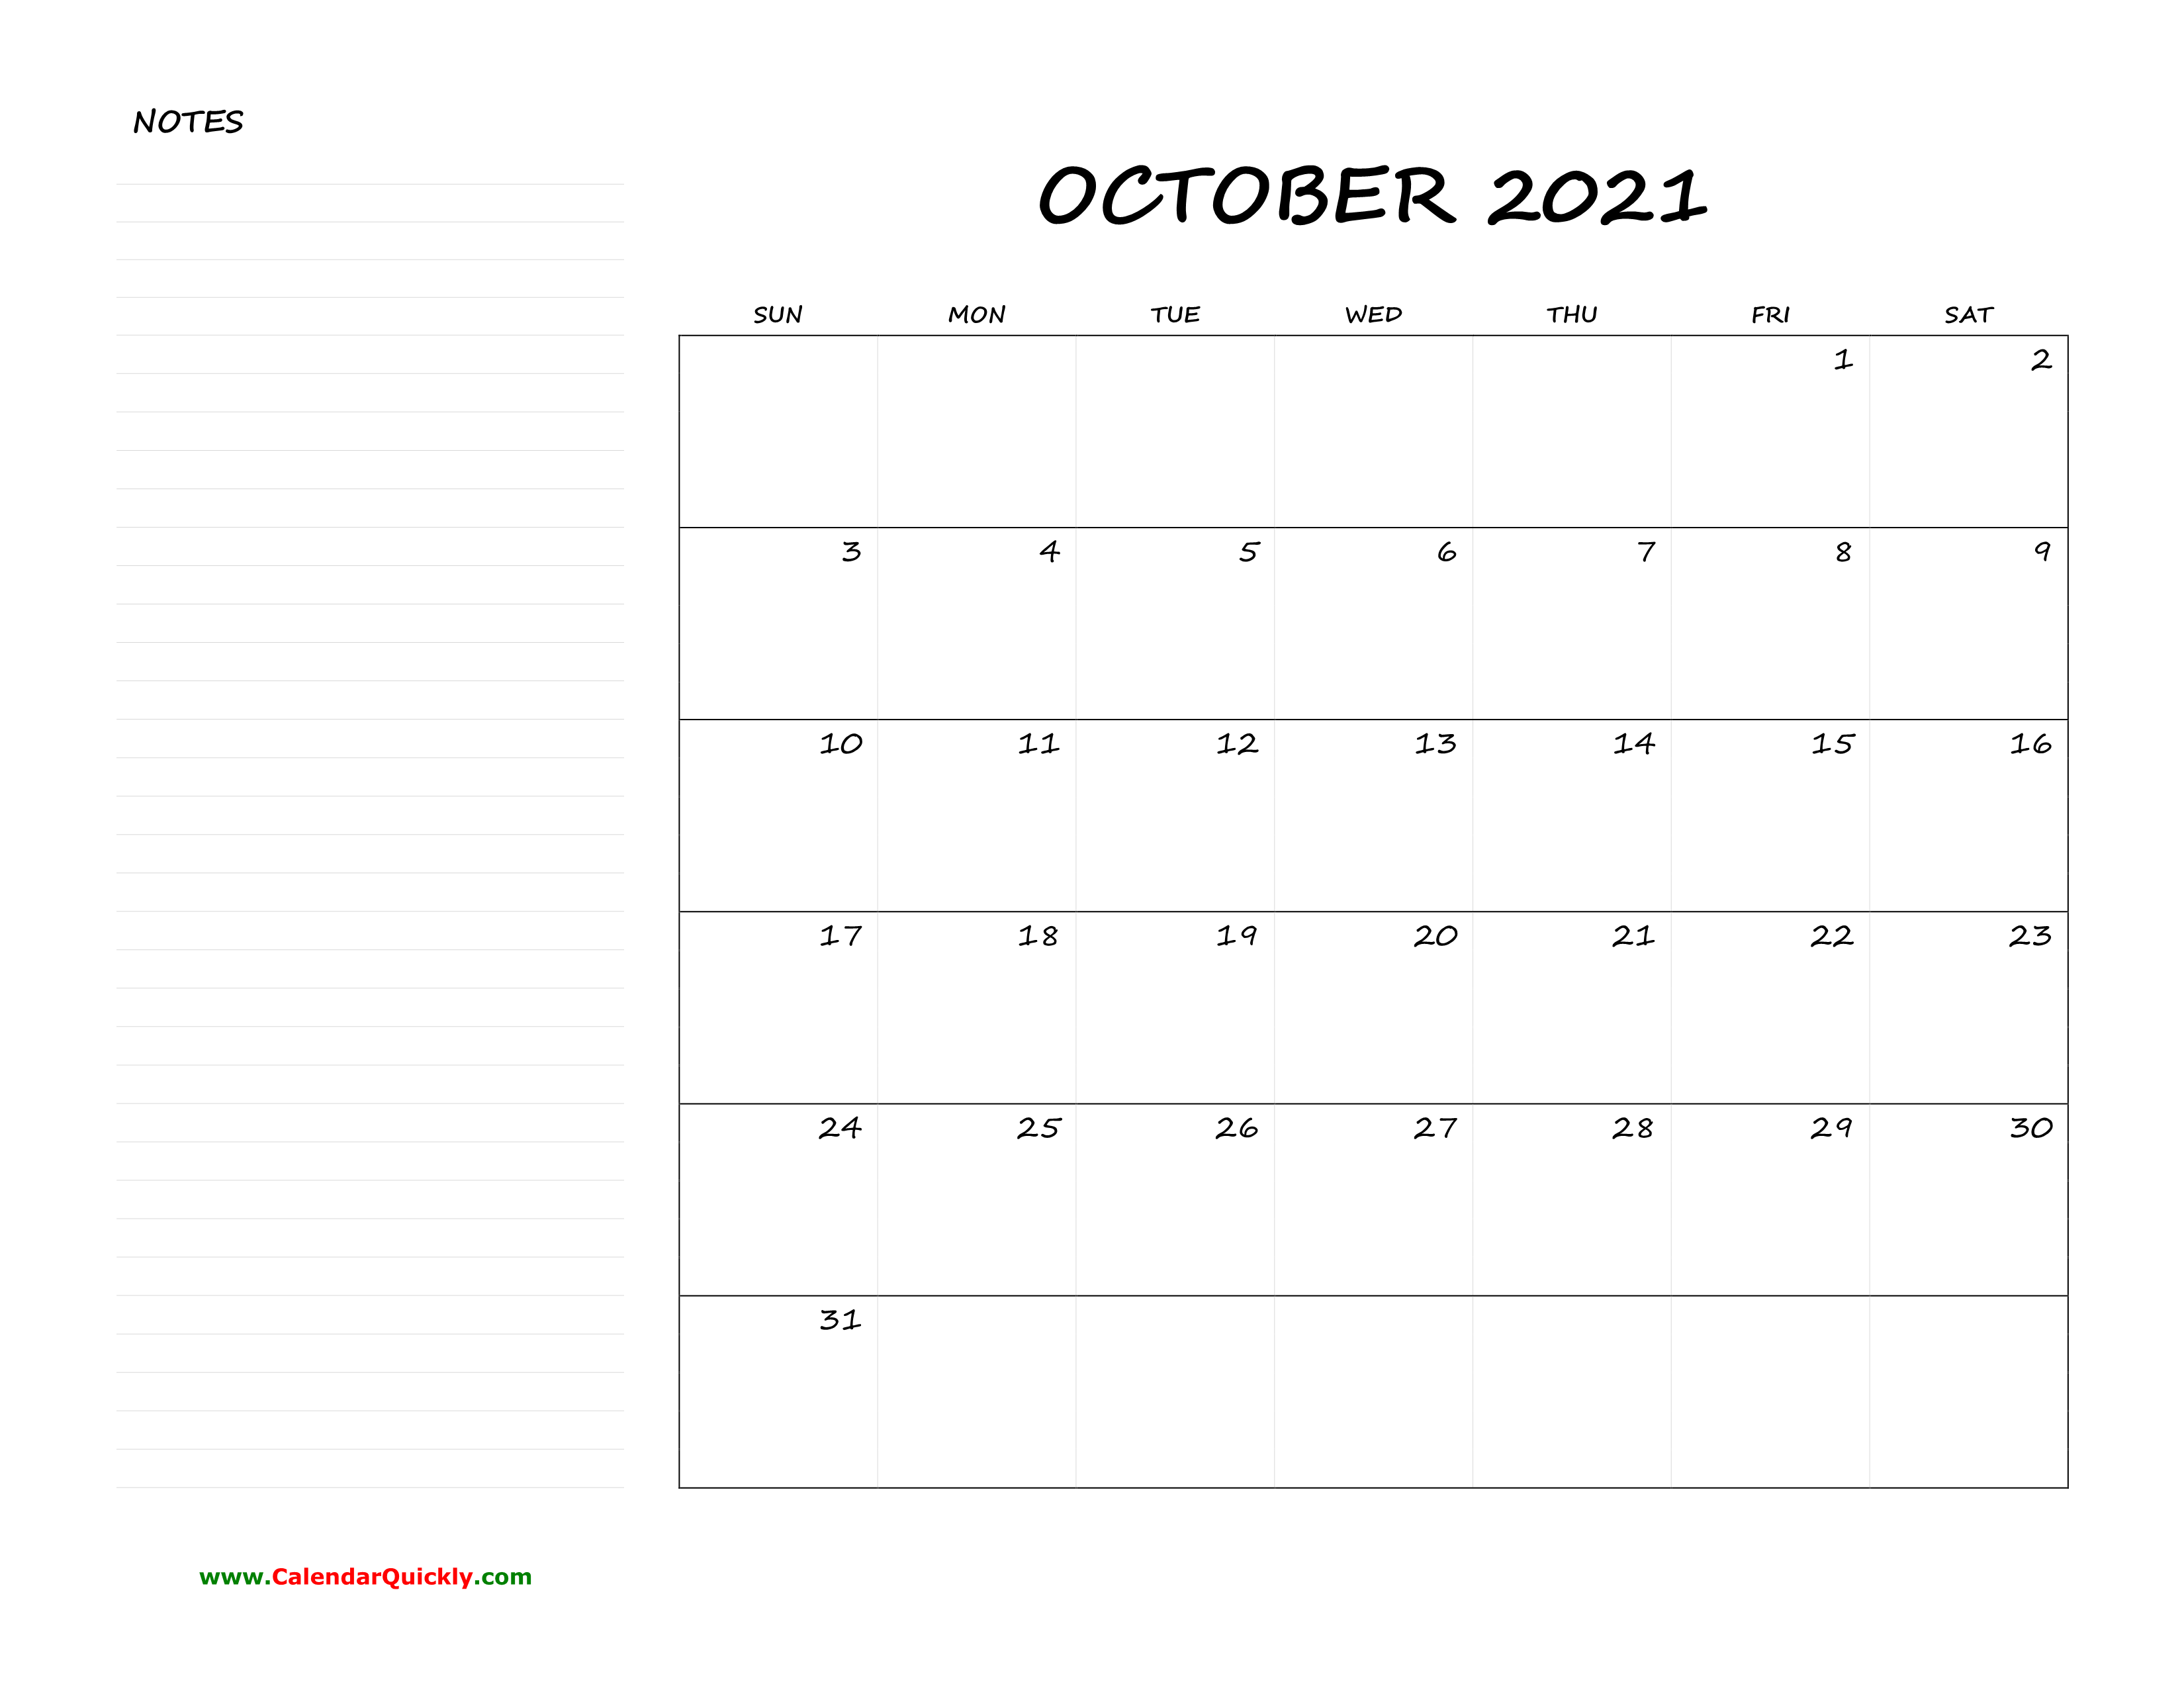 October Blank Calendar 2021 with Notes | Calendar Quickly